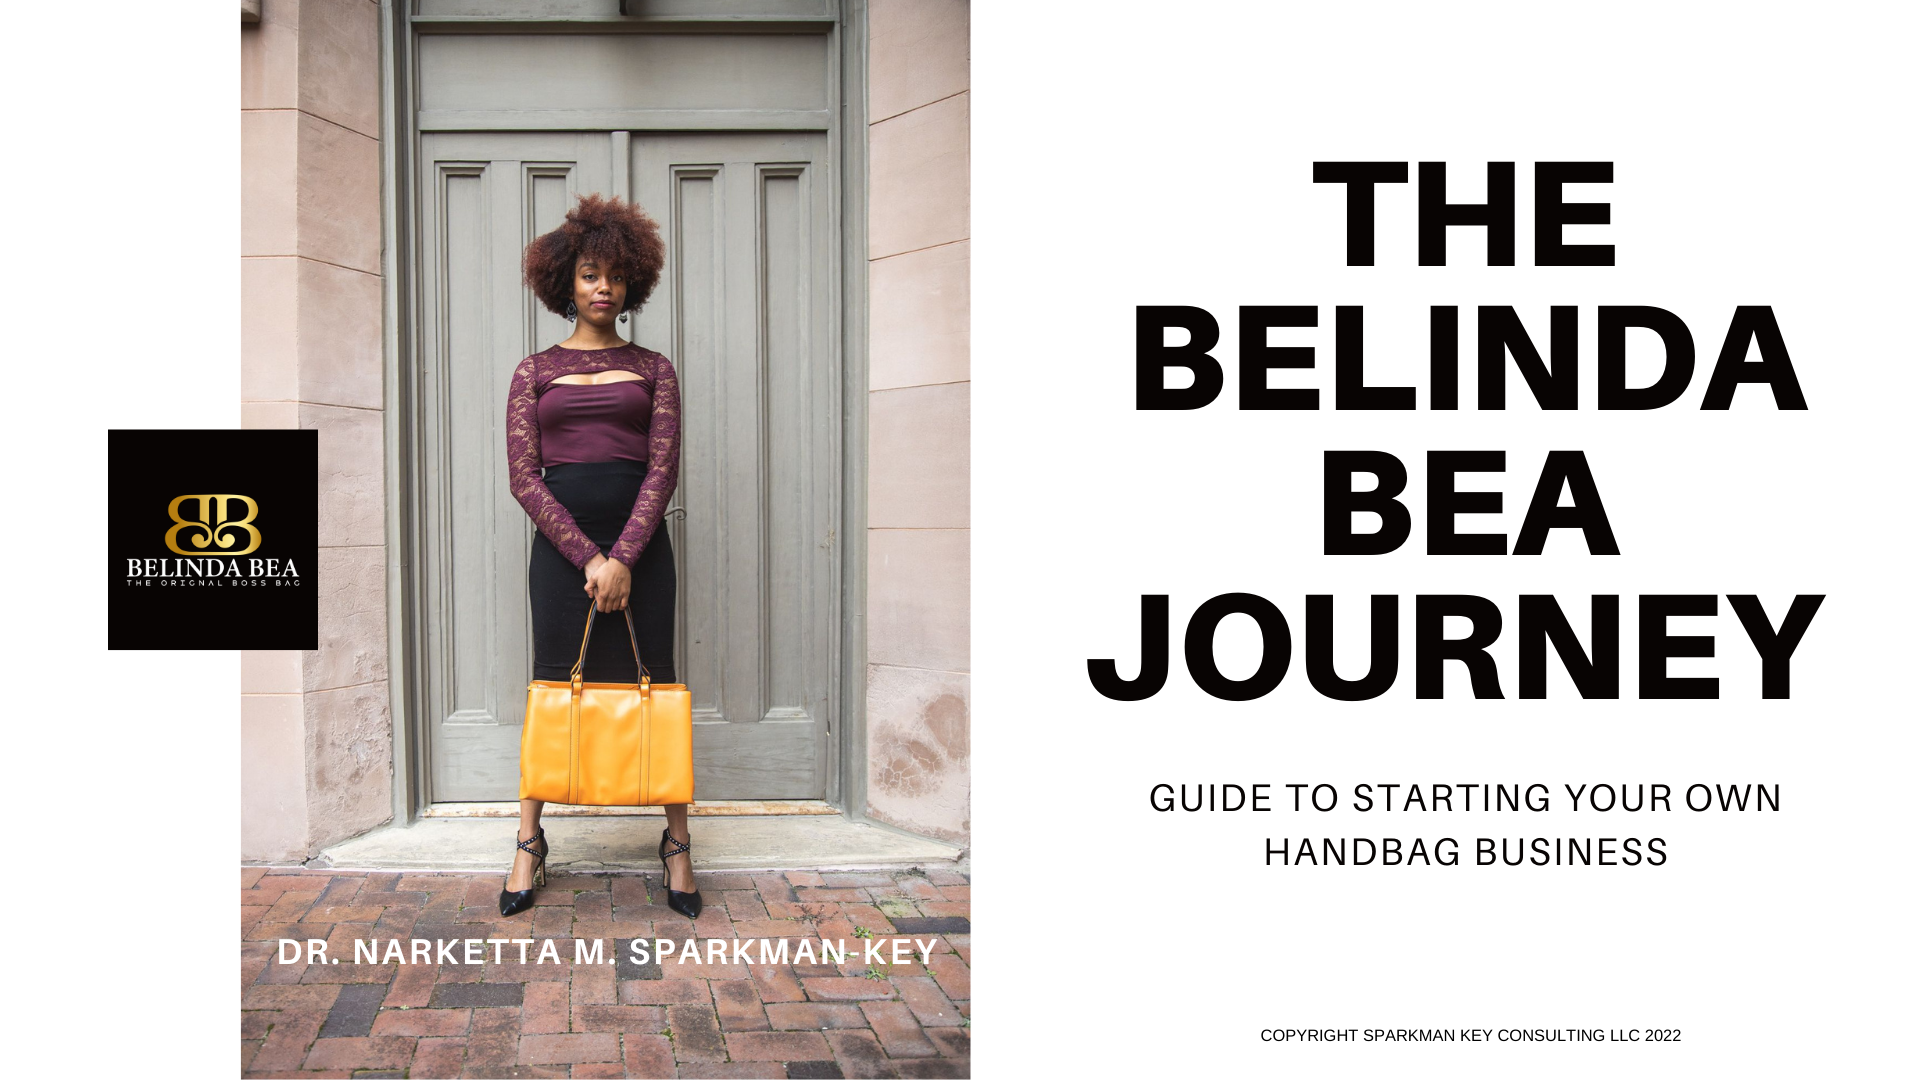 The-Belinda-Bea-Journey-title-image